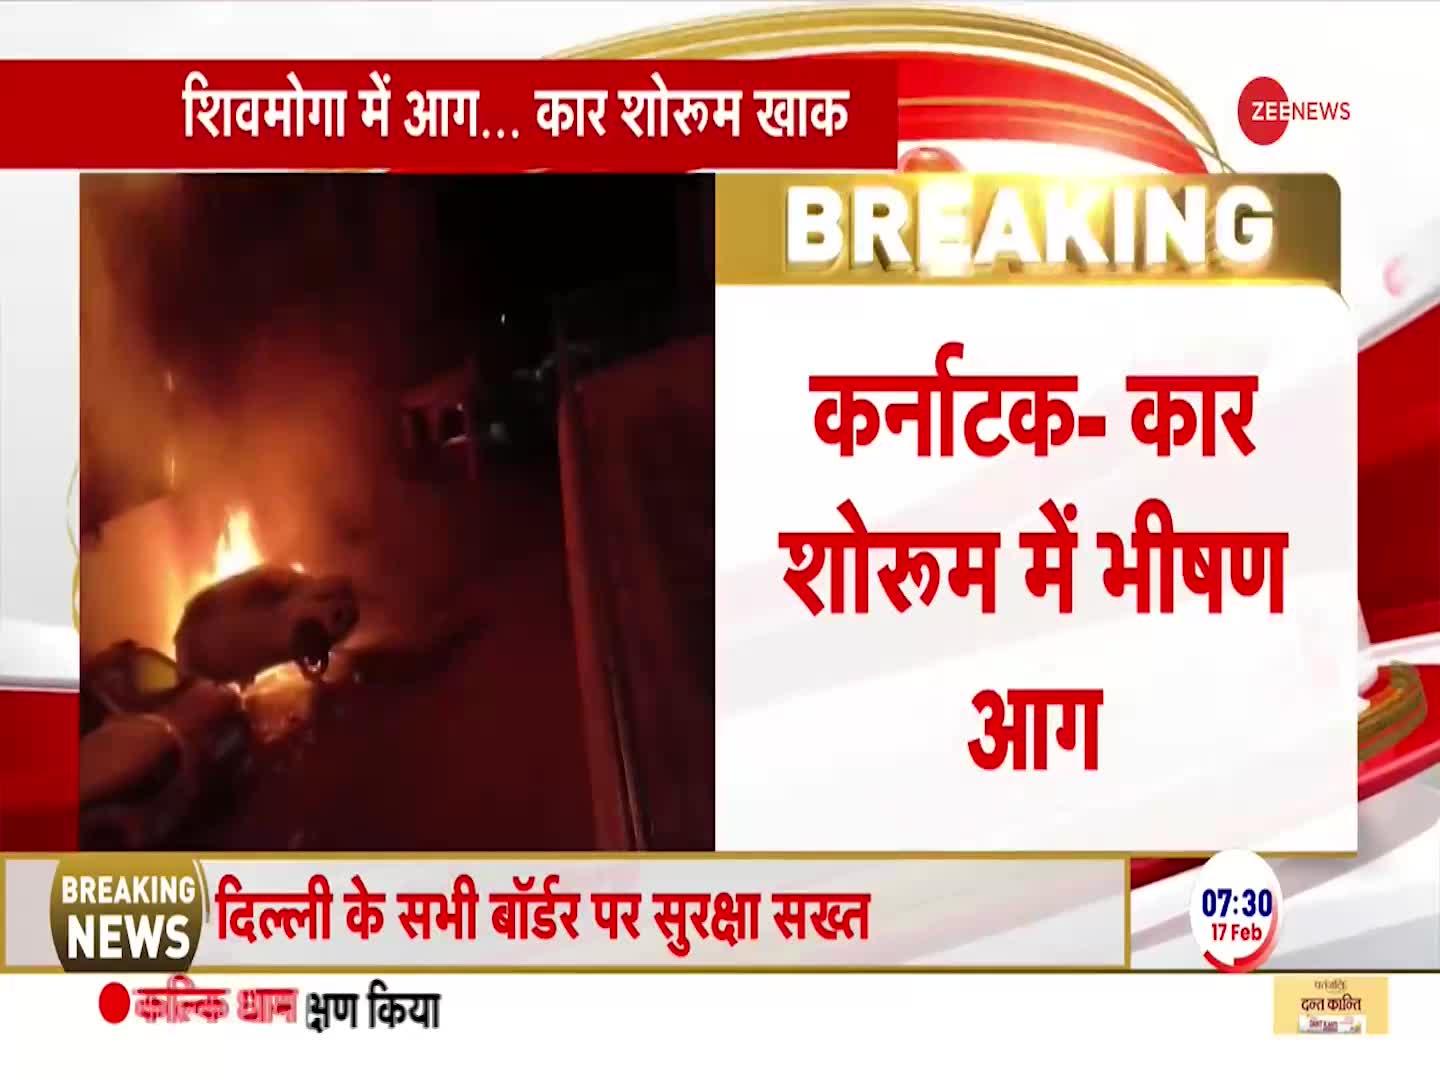 Breaking News: कर्नाटक के कार शोरूम में लगी भीषण आग, गाड़ियां जलकर राख